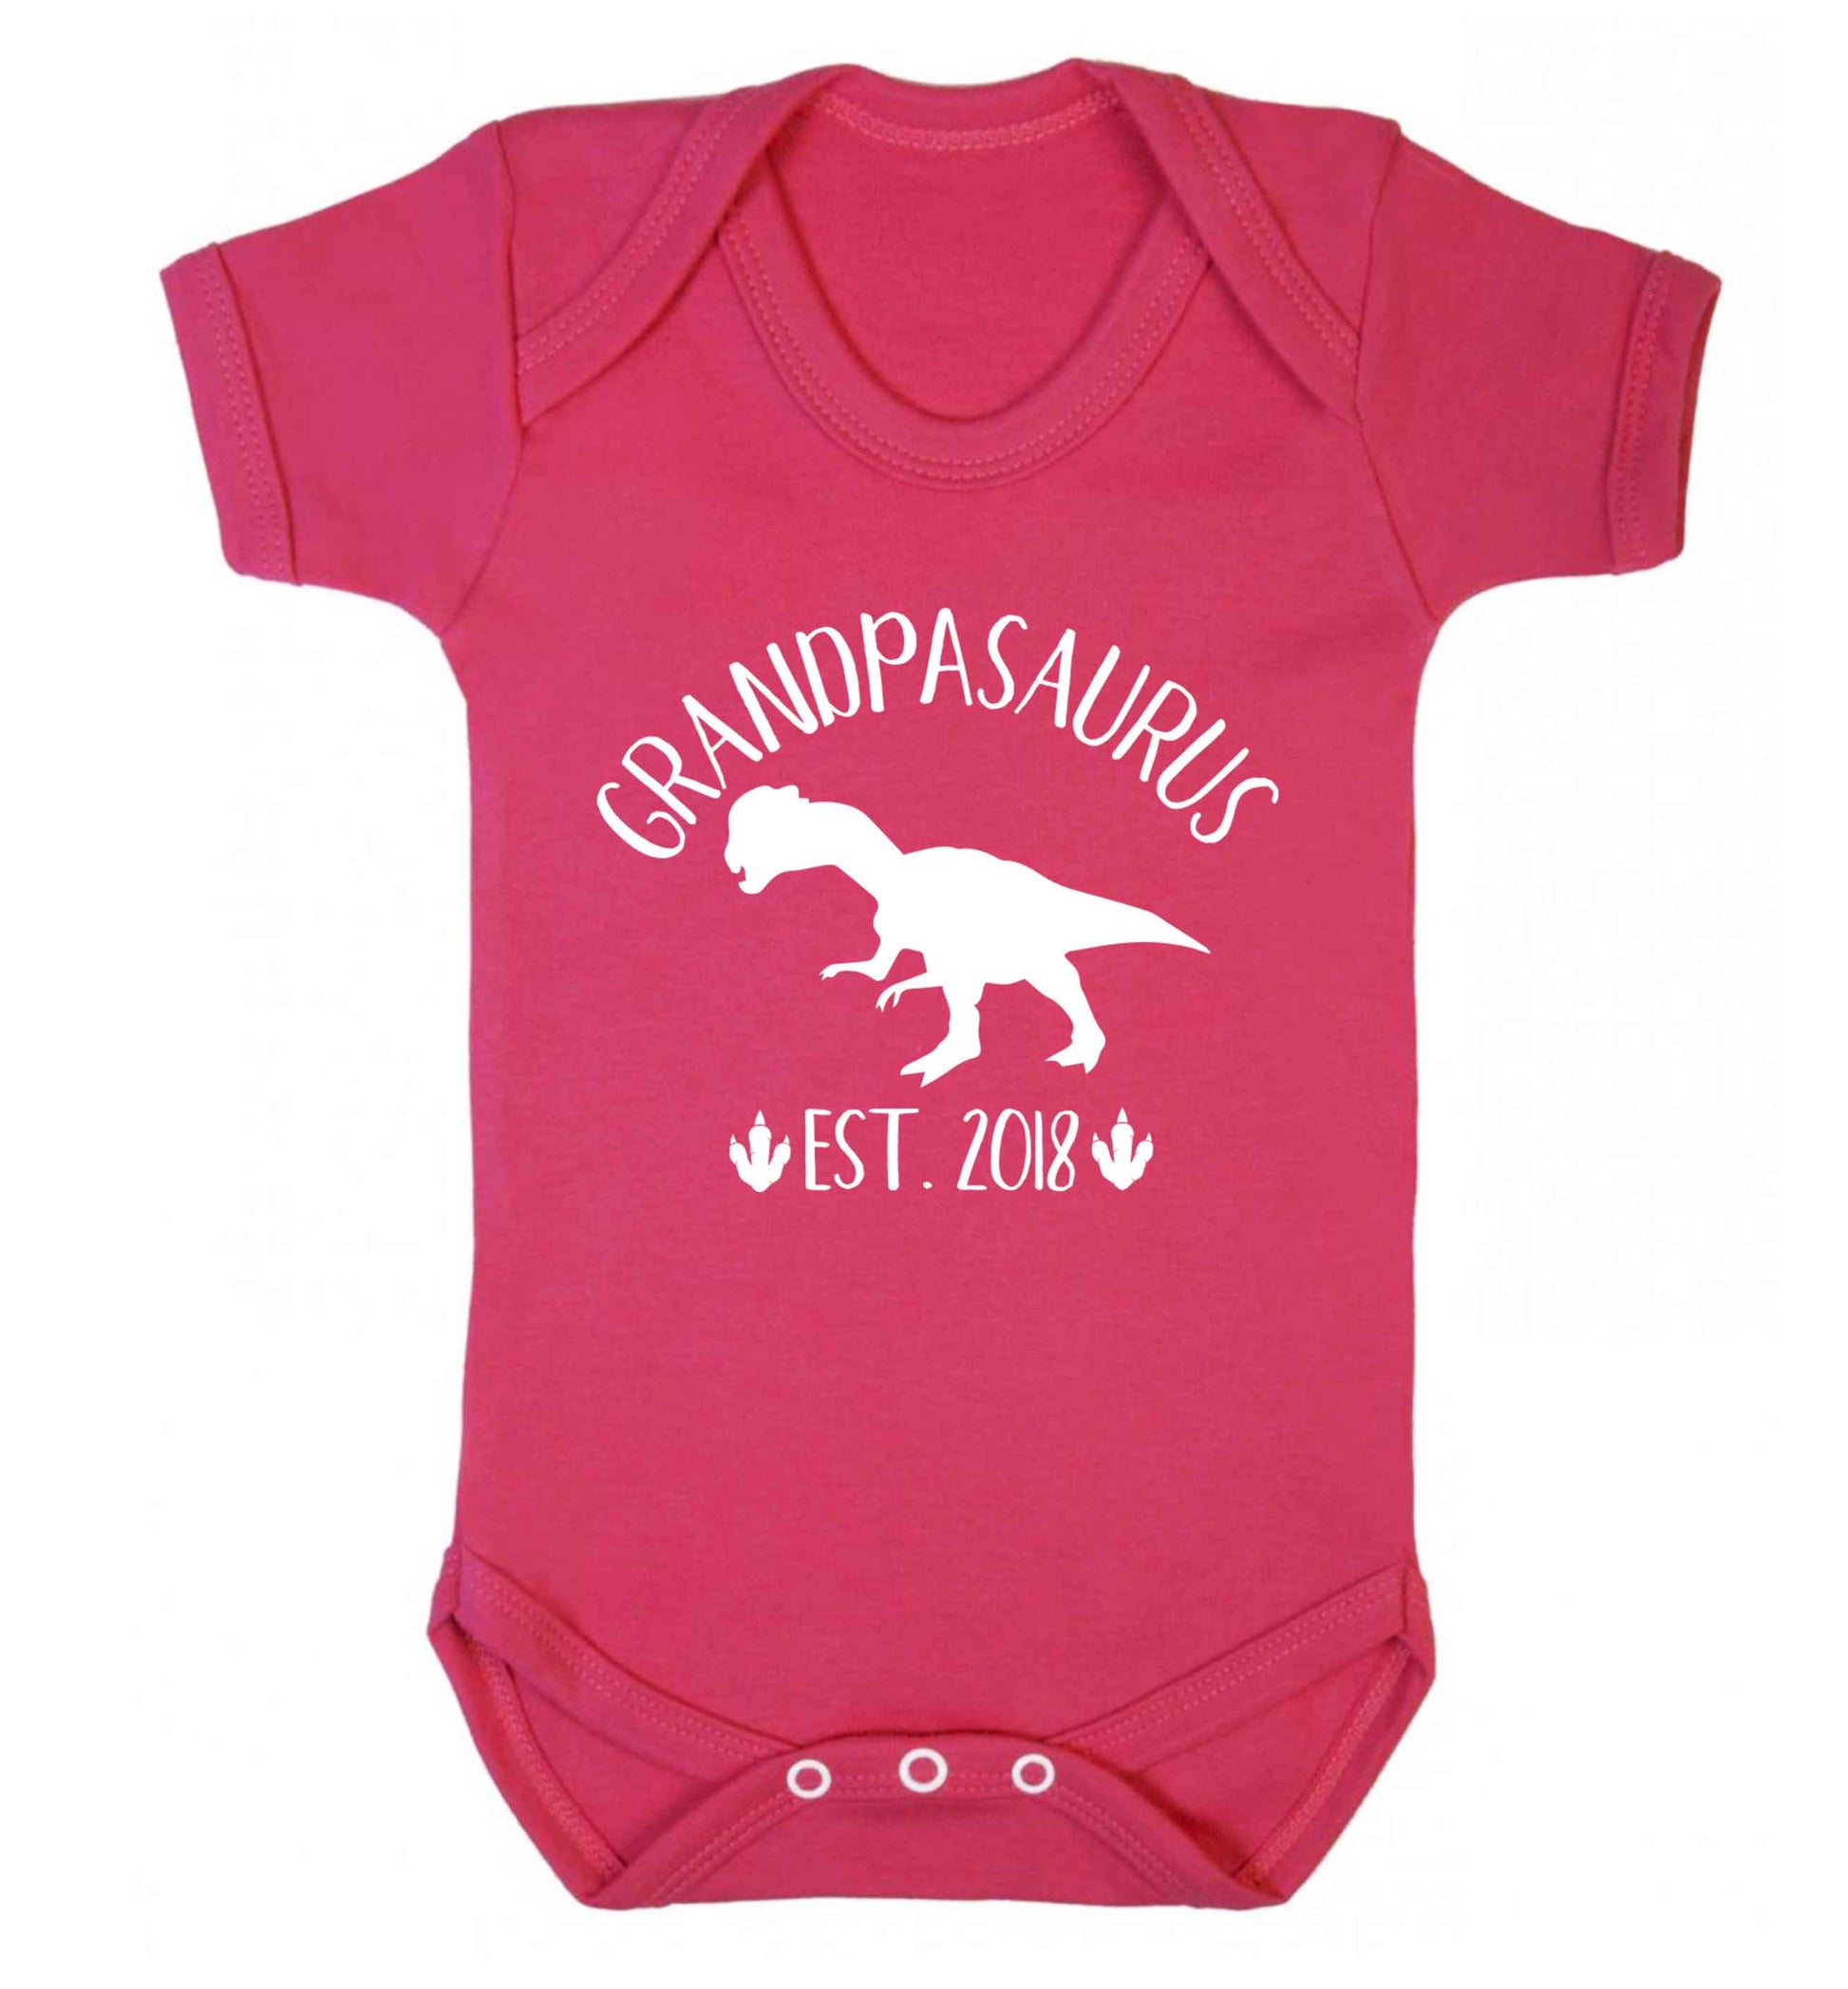 Personalised grandpasaurus since (custom date) Baby Vest dark pink 18-24 months